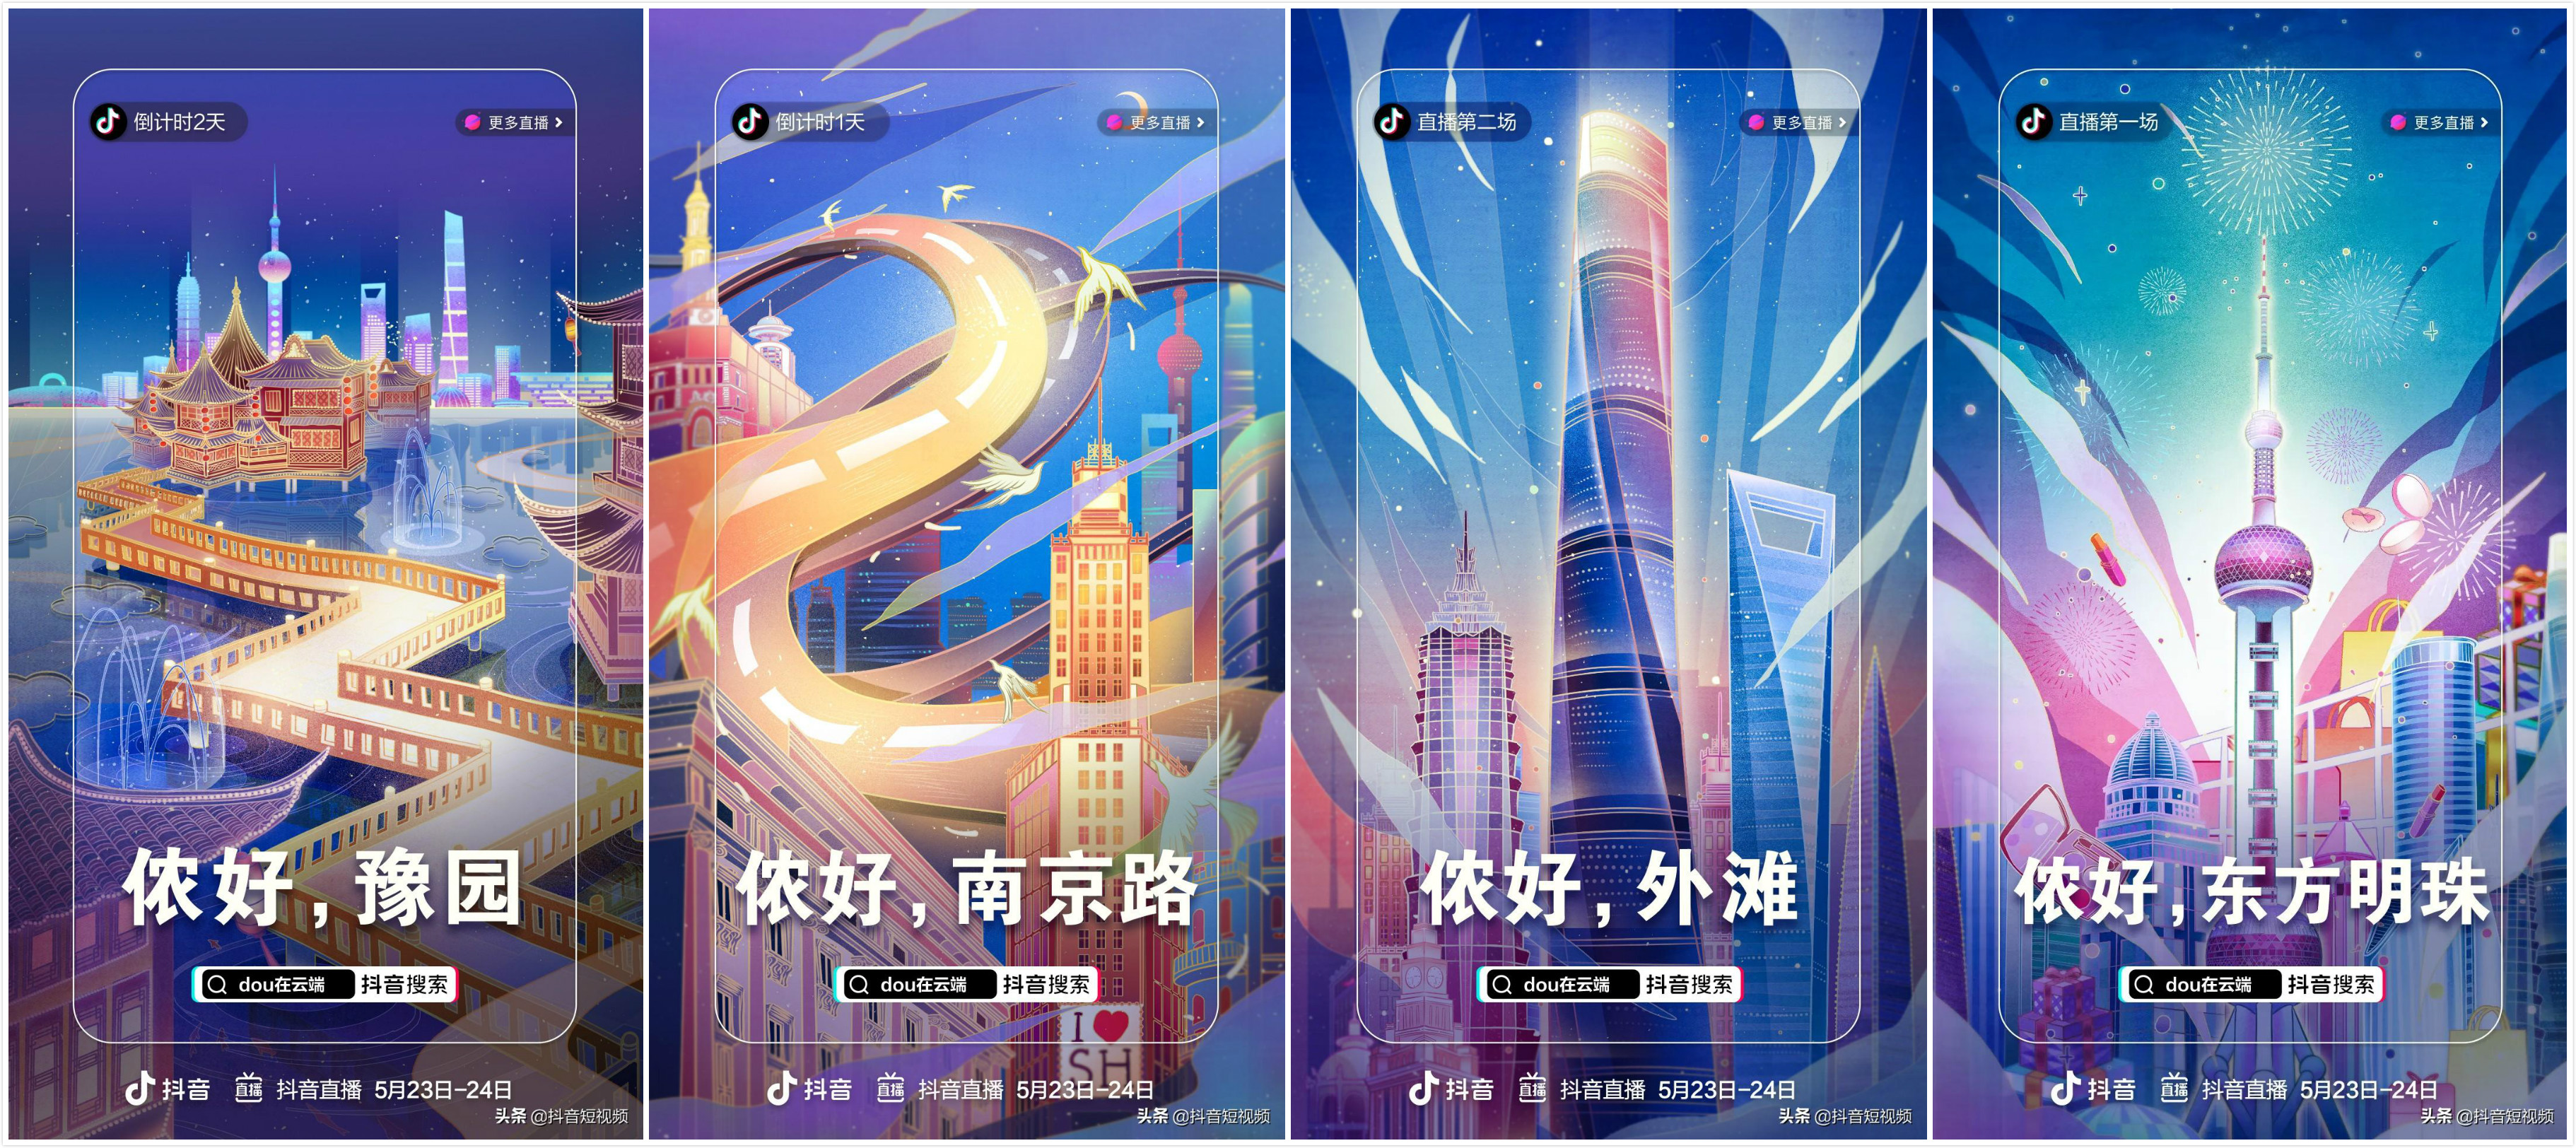 东方明珠塔携手抖音打造全新上海“夜经济”